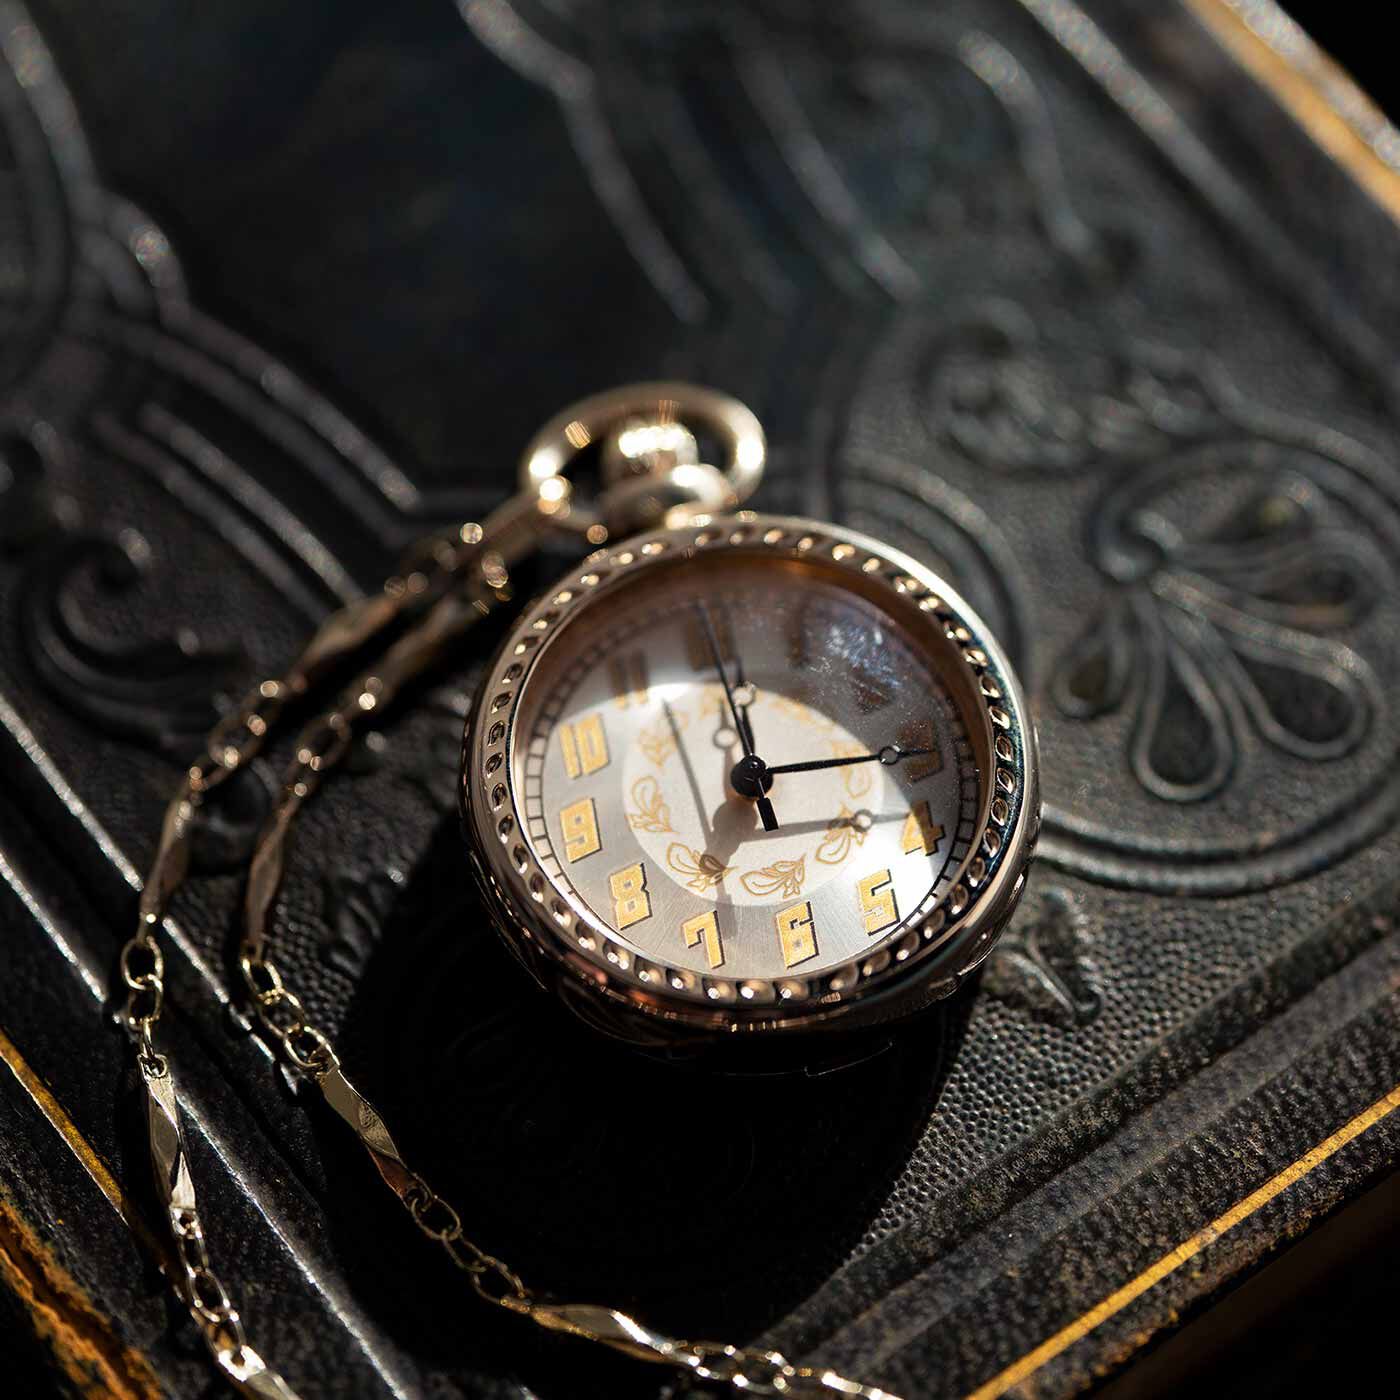 ＆Stories|滋賀の時計工房と作った アールデコ調の懐中時計〈シャンパンゴールド〉|モダンかつエレガントなアールデコ調の懐中時計。